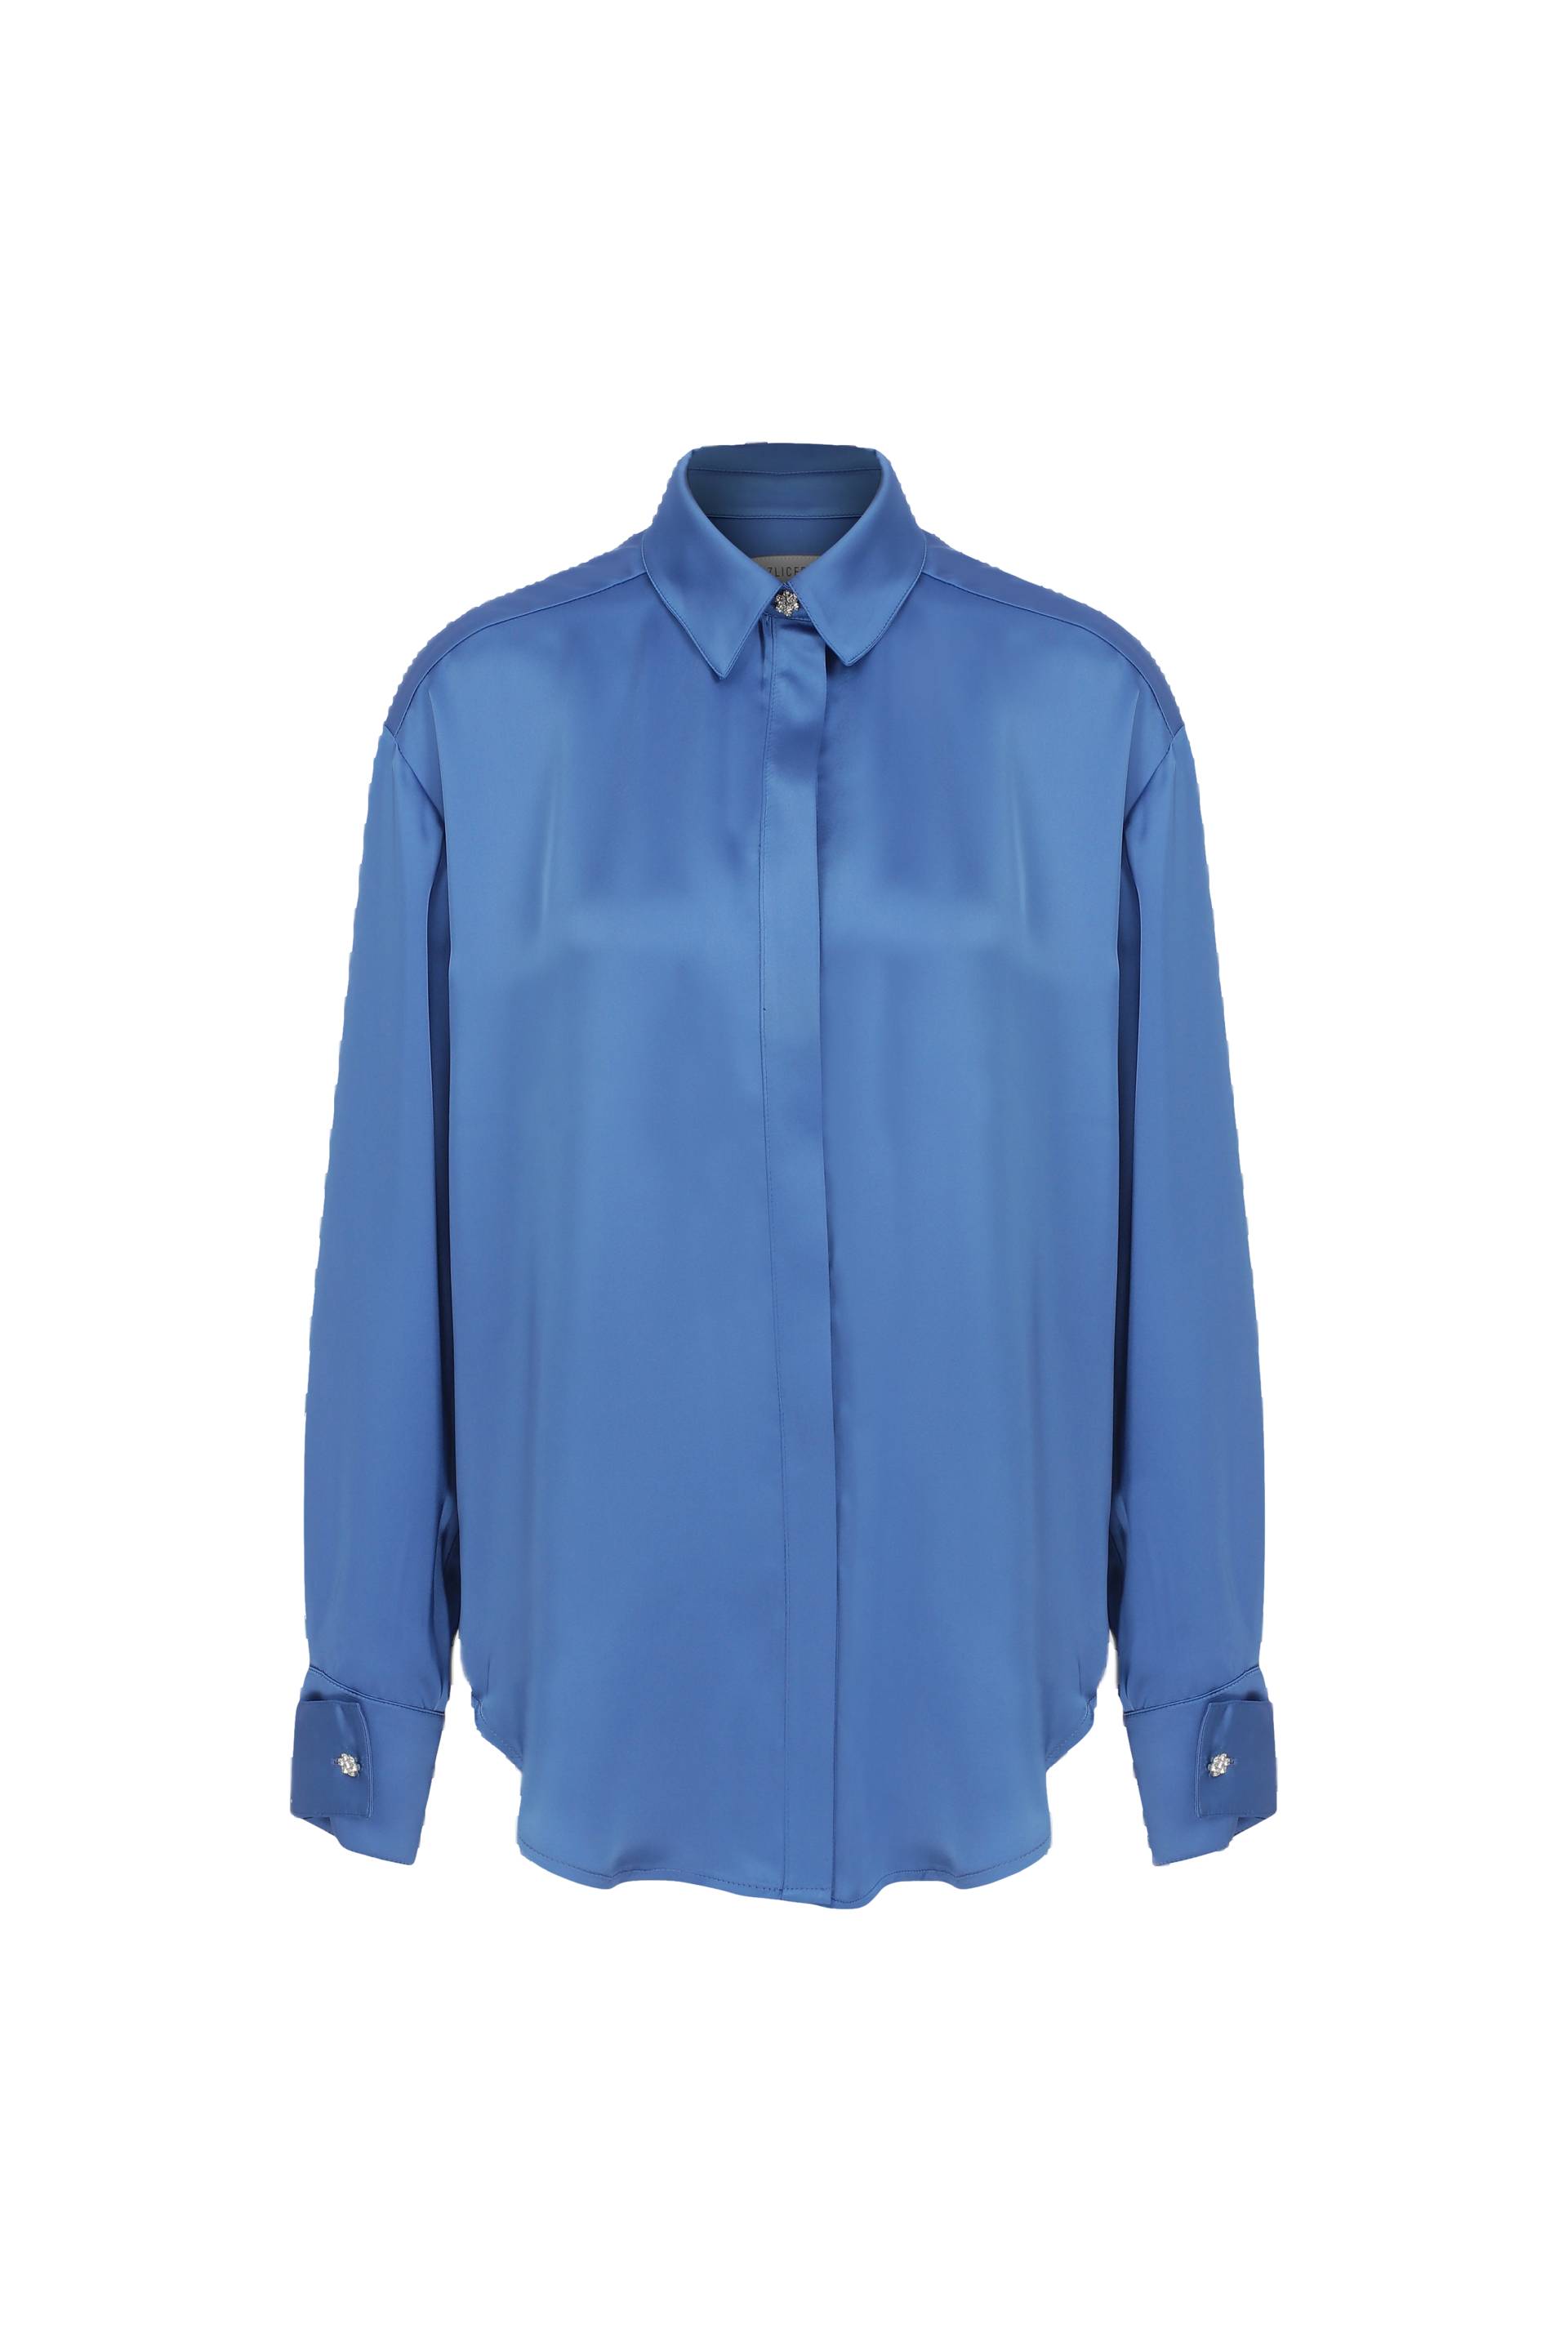 Ravenna Satin Shirt in French Blue von Nazli Ceren